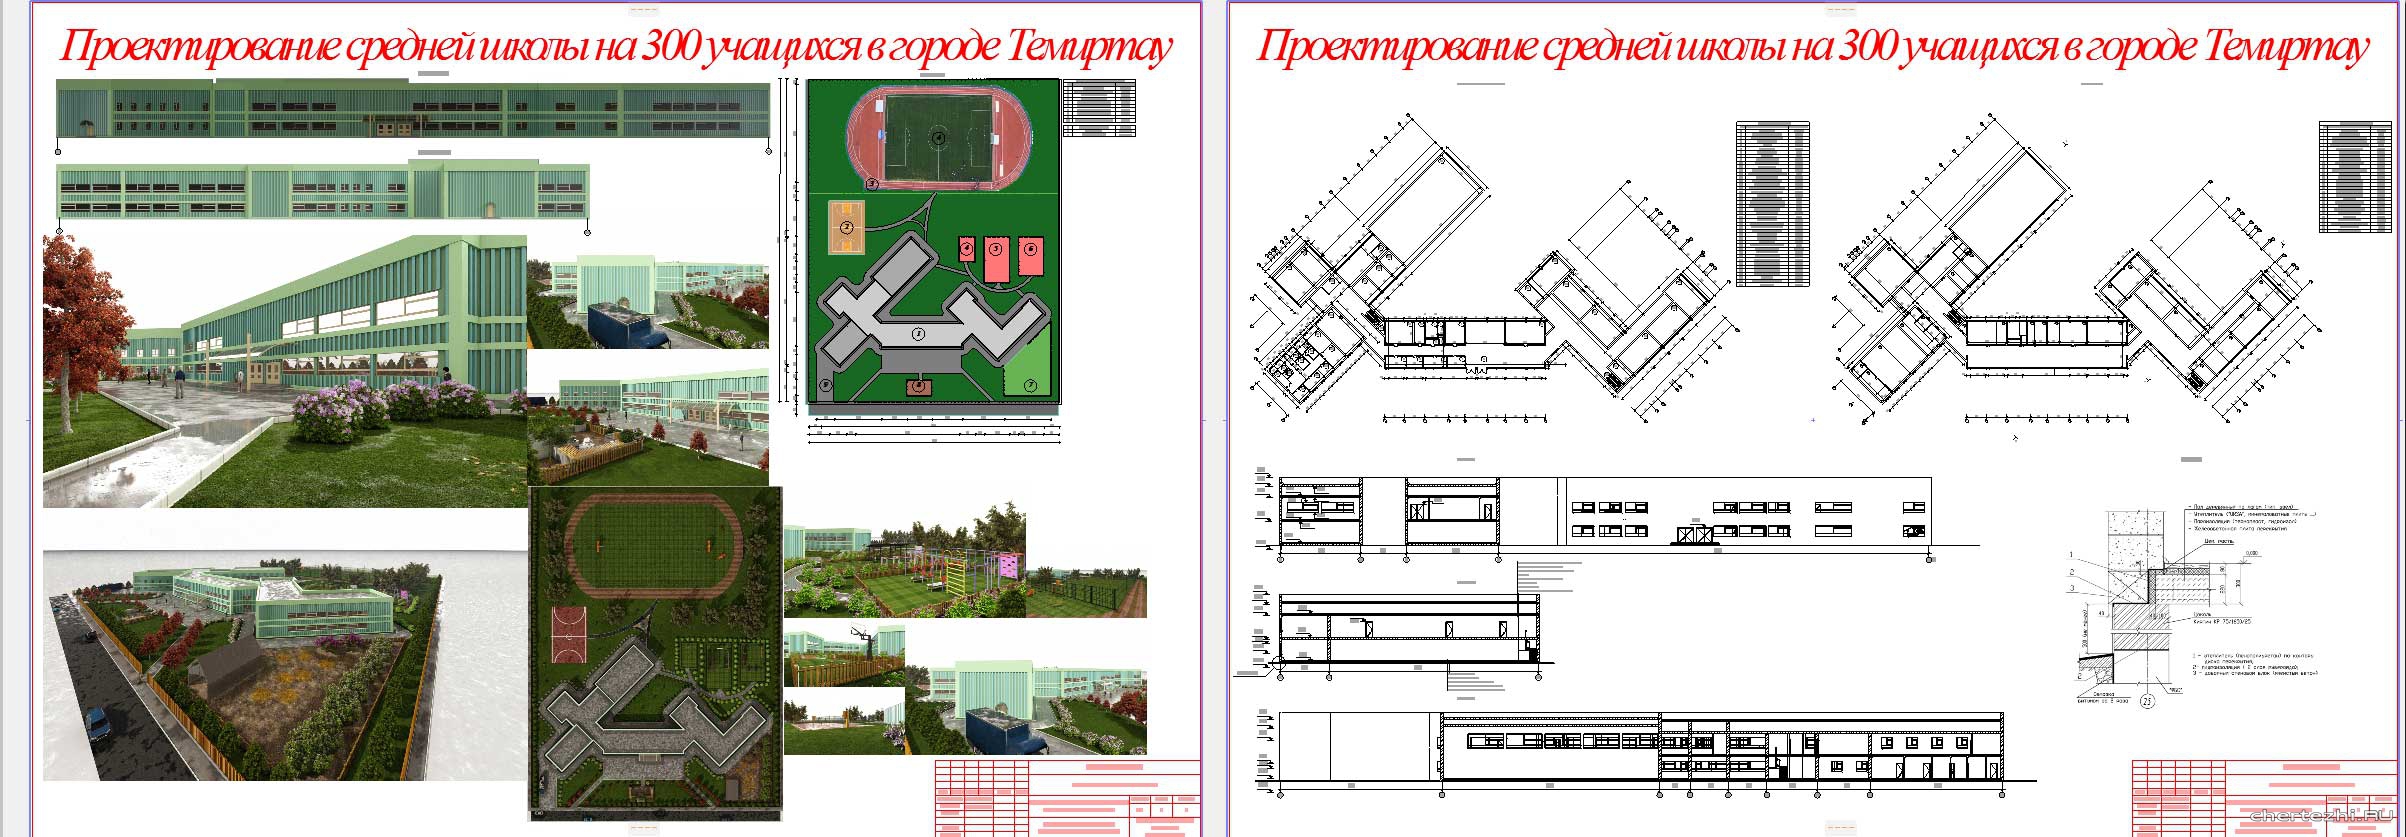 Курсовой проект - Средняя школа на 300 учащихся в г. Темиртау